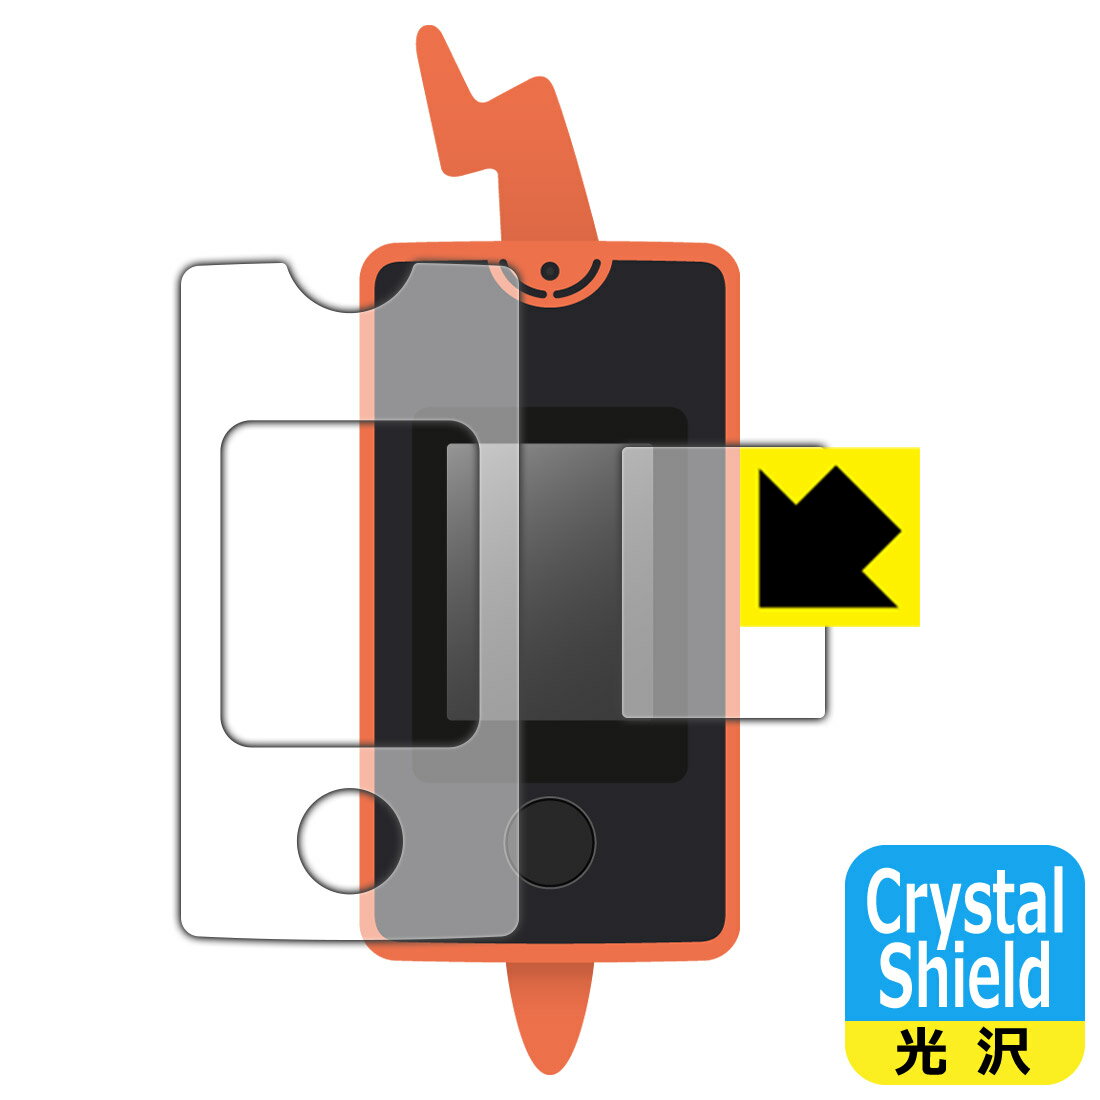 ●対応機種 : タカラトミー ポケットモンスター スマホロトム 用の商品です。●製品内容 : 画面用1枚・ふち用1枚●※このページに記載されている会社名や製品名、対応機種名などは各社の商標、または登録商標です。●「Crystal Shield」は高い透明度と光沢感で、保護フィルムを貼っていないかのようなクリア感のある『光沢タイプの保護フィルム』●安心の国産素材を使用。日本国内の自社工場で製造し出荷しています。【ポスト投函送料無料】商品は【ポスト投函発送 (追跡可能メール便)】で発送します。お急ぎ、配達日時を指定されたい方は以下のクーポンを同時購入ください。【お急ぎ便クーポン】　プラス110円(税込)で速達扱いでの発送。お届けはポストへの投函となります。【配達日時指定クーポン】　プラス550円(税込)で配達日時を指定し、宅配便で発送させていただきます。【お急ぎ便クーポン】はこちらをクリック【配達日時指定クーポン】はこちらをクリック 　 貼っていることを意識させないほどの高い透明度に、高級感あふれる光沢・クリアな仕上げとなります。 動画視聴や画像編集など、機器本来の発色を重視したい方におすすめです。 ハードコート加工がされており、キズや擦れに強くなっています。簡単にキズがつかず長くご利用いただけます。 表面はフッ素コーティングがされており、皮脂や汚れがつきにくく、また、落ちやすくなっています。 指滑りもなめらかで、快適な使用感です。 油性マジックのインクもはじきますので簡単に拭き取れます。 接着面は気泡の入りにくい特殊な自己吸着タイプです。素材に柔軟性があり、貼り付け作業も簡単にできます。また、はがすときにガラス製フィルムのように割れてしまうことはありません。 貼り直しが何度でもできるので、正しい位置へ貼り付けられるまでやり直すことができます。 抗菌加工によりフィルム表面の菌の繁殖を抑えることができます。清潔な画面を保ちたい方におすすめです。 ※抗菌率99.9％ / JIS Z2801 抗菌性試験方法による評価 最高級グレードの国産素材を日本国内の弊社工場で加工している完全な Made in Japan です。安心の品質をお届けします。 使用上の注意 ●本製品は機器の画面をキズなどから保護するフィルムです。他の目的にはご使用にならないでください。 ●本製品は液晶保護および機器本体を完全に保護することを保証するものではありません。機器の破損、損傷、故障、その他損害につきましては一切の責任を負いかねます。 ●製品の性質上、画面操作の反応が変化したり、表示等が変化して見える場合がございます。 ●貼り付け作業時の失敗(位置ズレ、汚れ、ゆがみ、折れ、気泡など)および取り外し作業時の破損、損傷などについては、一切の責任を負いかねます。 ●水に濡れた状態でのご使用は吸着力の低下などにより、保護フィルムがはがれてしまう場合がございます。防水対応の機器でご使用の場合はご注意ください。 ●アルコール類やその他薬剤を本製品に付着させないでください。表面のコーティングや吸着面が変質するおそれがあります。 ●品質向上のため、仕様などを予告なく変更する場合がございますので、予めご了承ください。